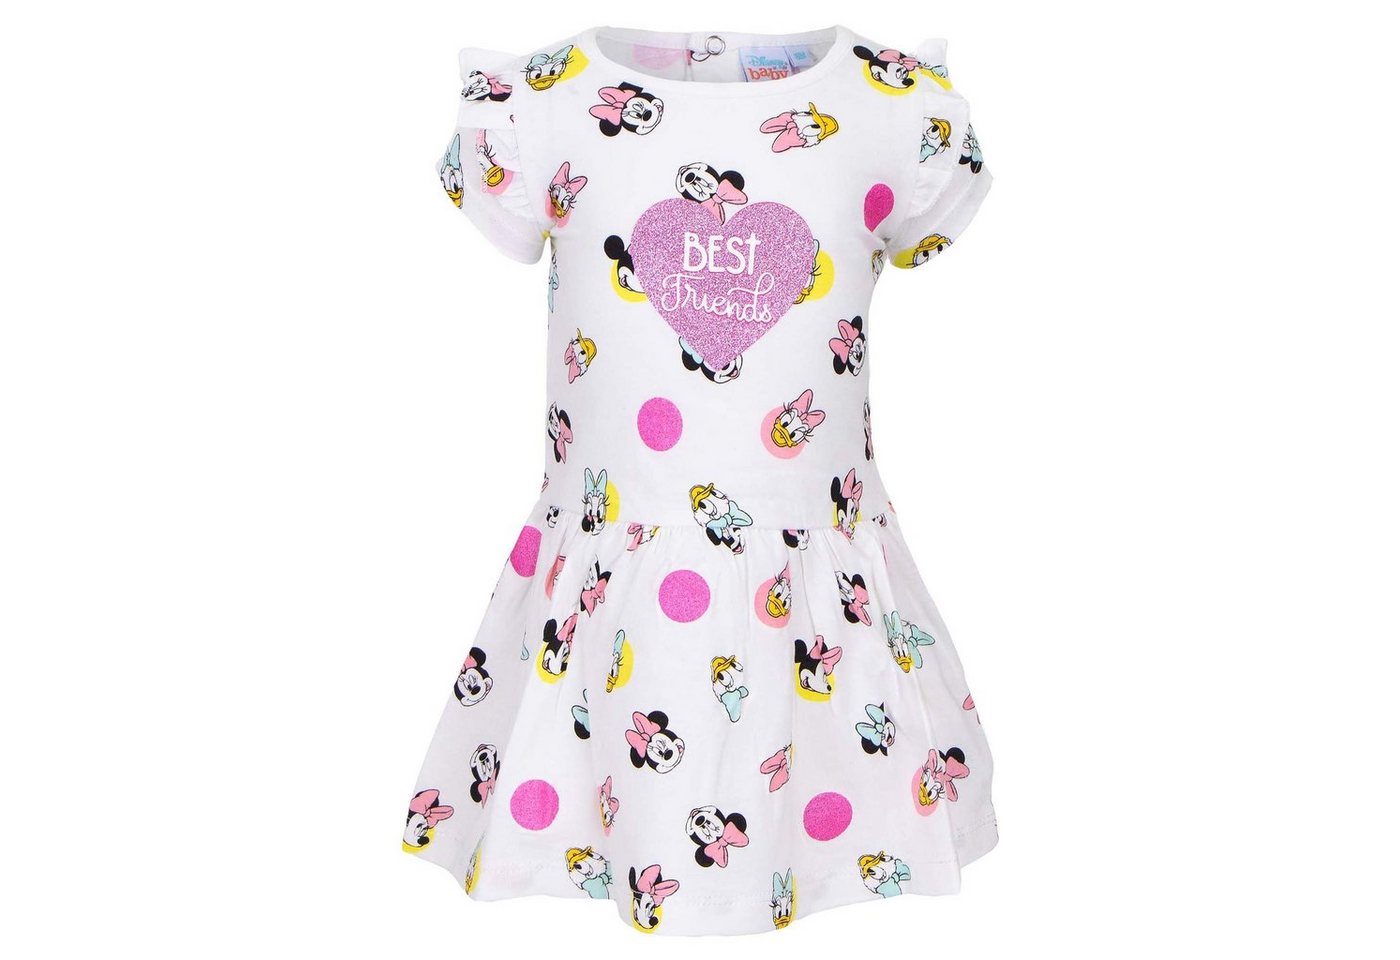 Disney Minnie Mouse Sommerkleid Minnie Maus und Daisy Duck Baby Kleid Gr. 68 bis 86, 100% baumwolle von Disney Minnie Mouse